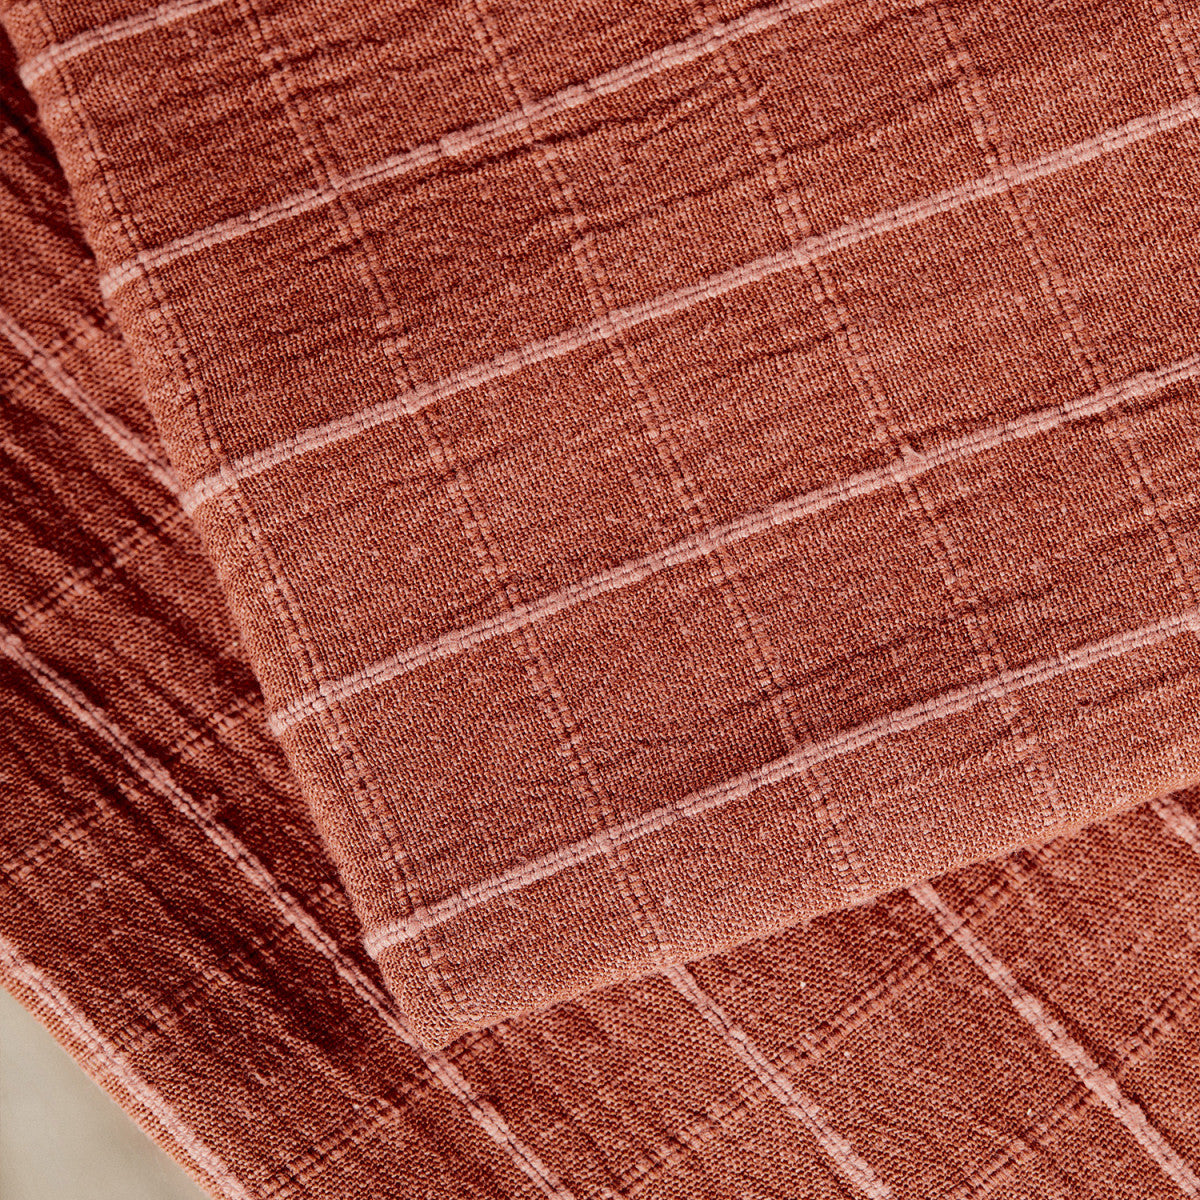 Atelier Brunette - Tile in Chestnut Linen Blend Fabric